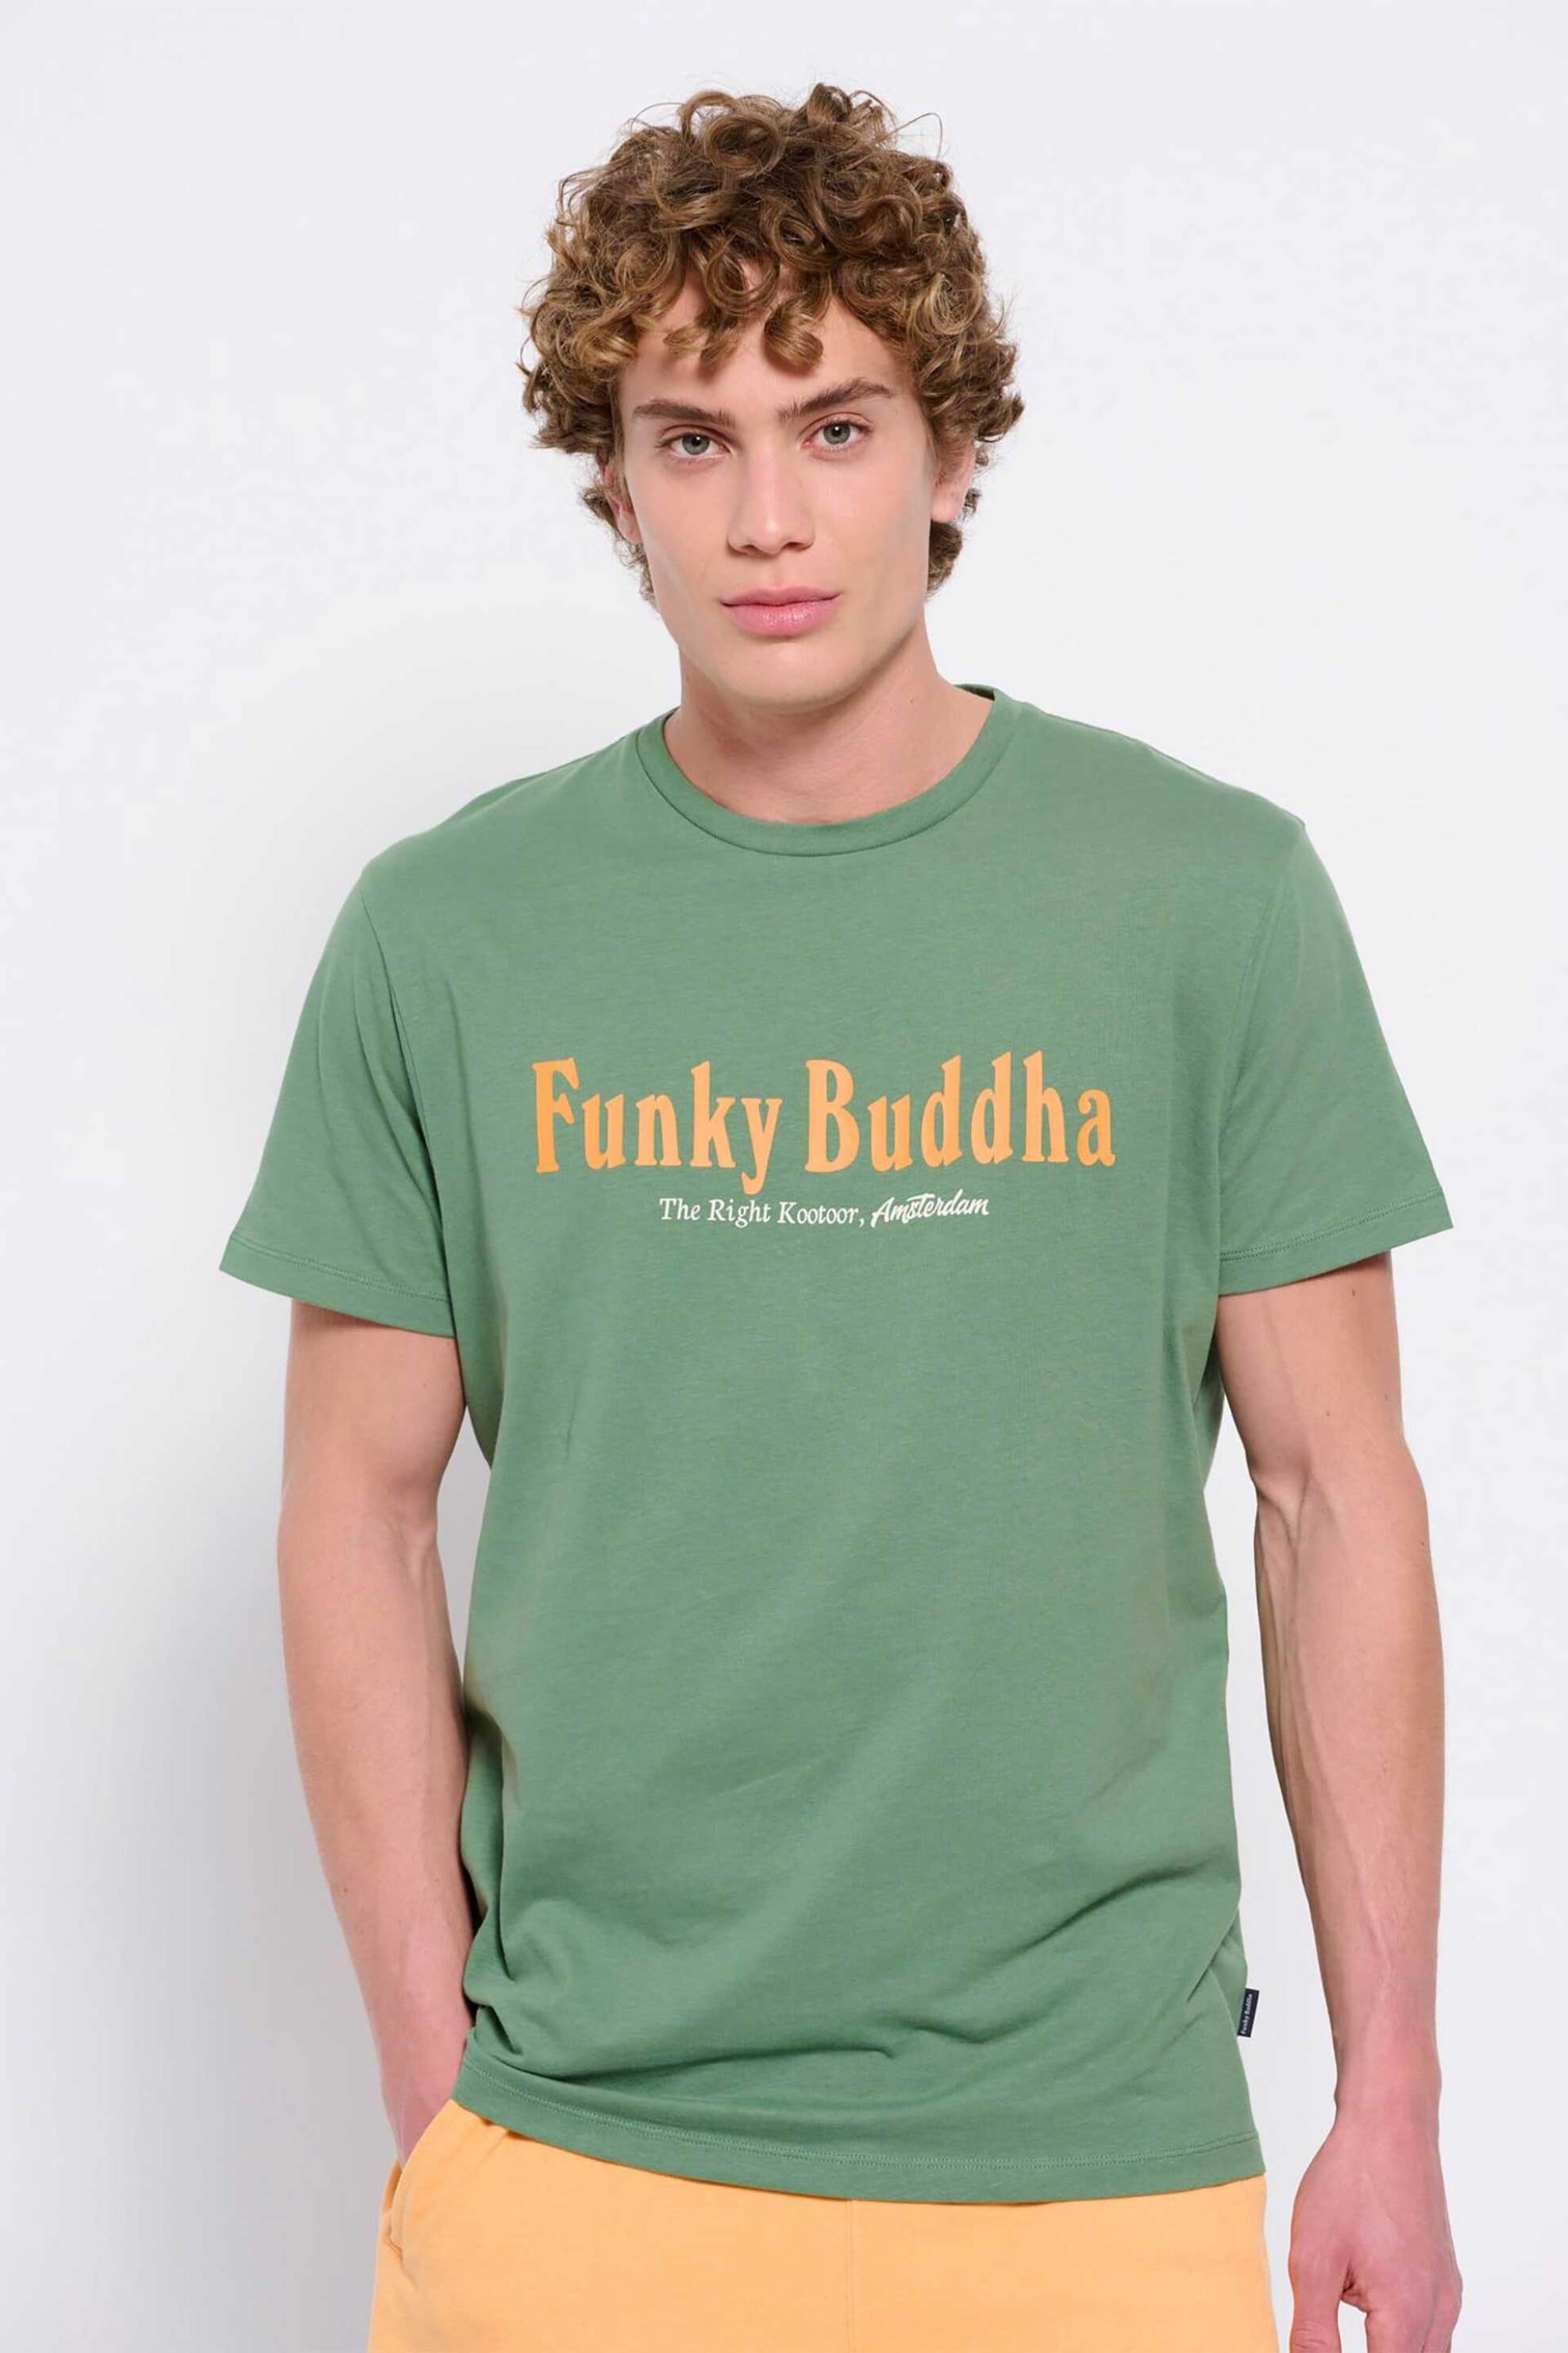 Ανδρική Μόδα > Ανδρικά Ρούχα > Ανδρικές Μπλούζες > Ανδρικά T-Shirts Funky Buddha ανδρικό βαμβακερό T-shirt μονόχρωμο με contrast logo print και logo label στο πλάι - FBM007-021-04 Πράσινο